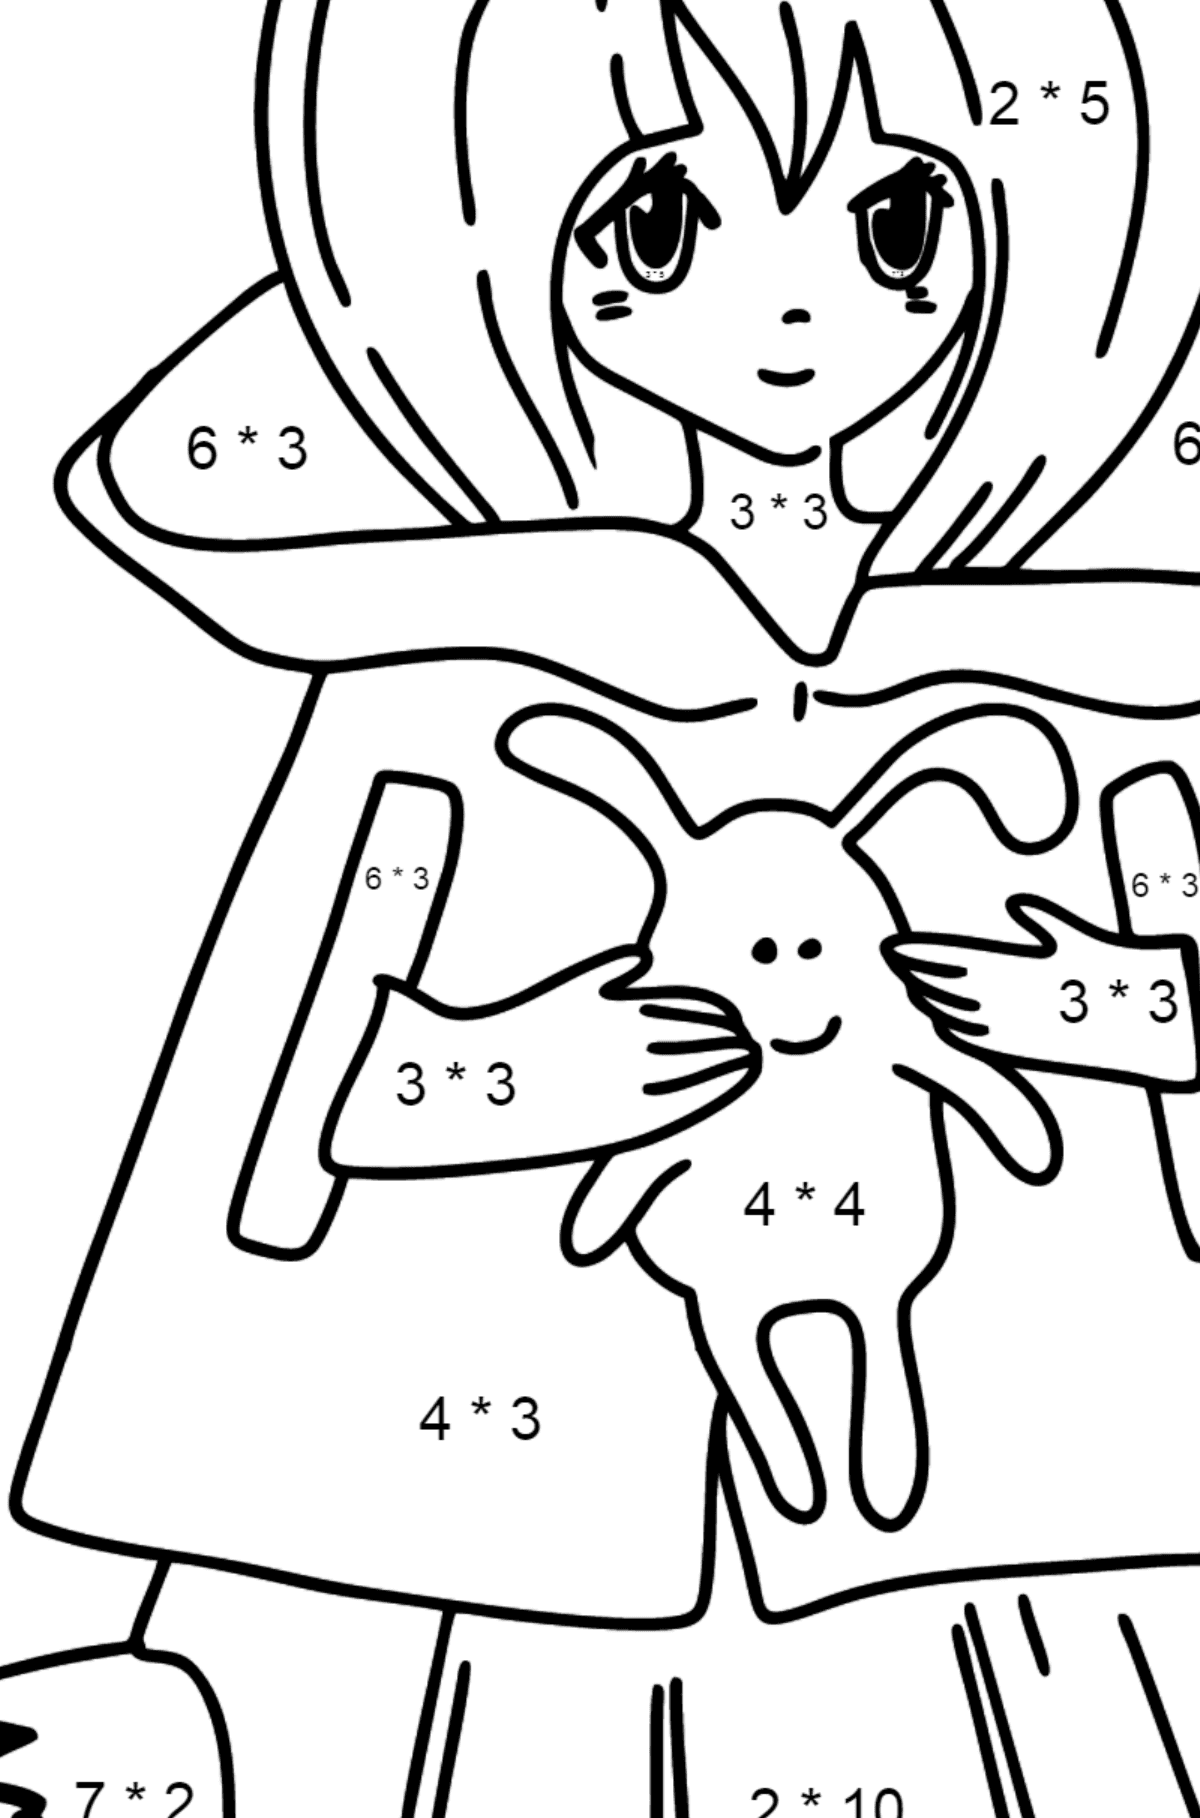 Anime meisje met staart kleurplaat - Wiskunde kleurplaten - vermenigvuldiging voor kinderen